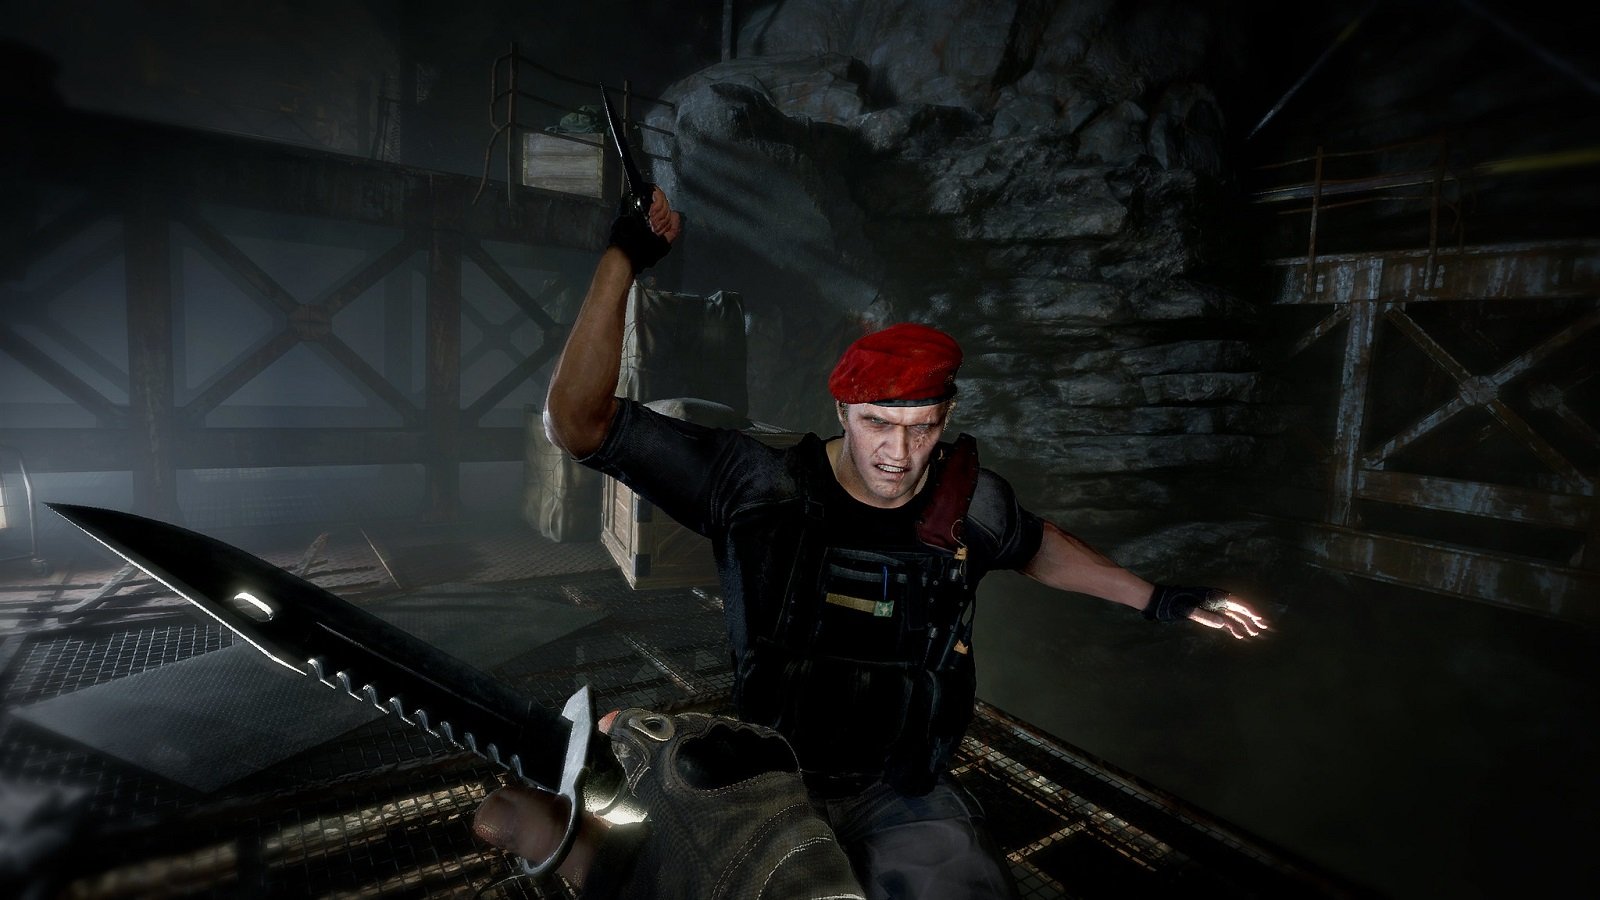 Demo de Resident Evil 4 pode ficar disponível hoje (09)! – Game Notícias